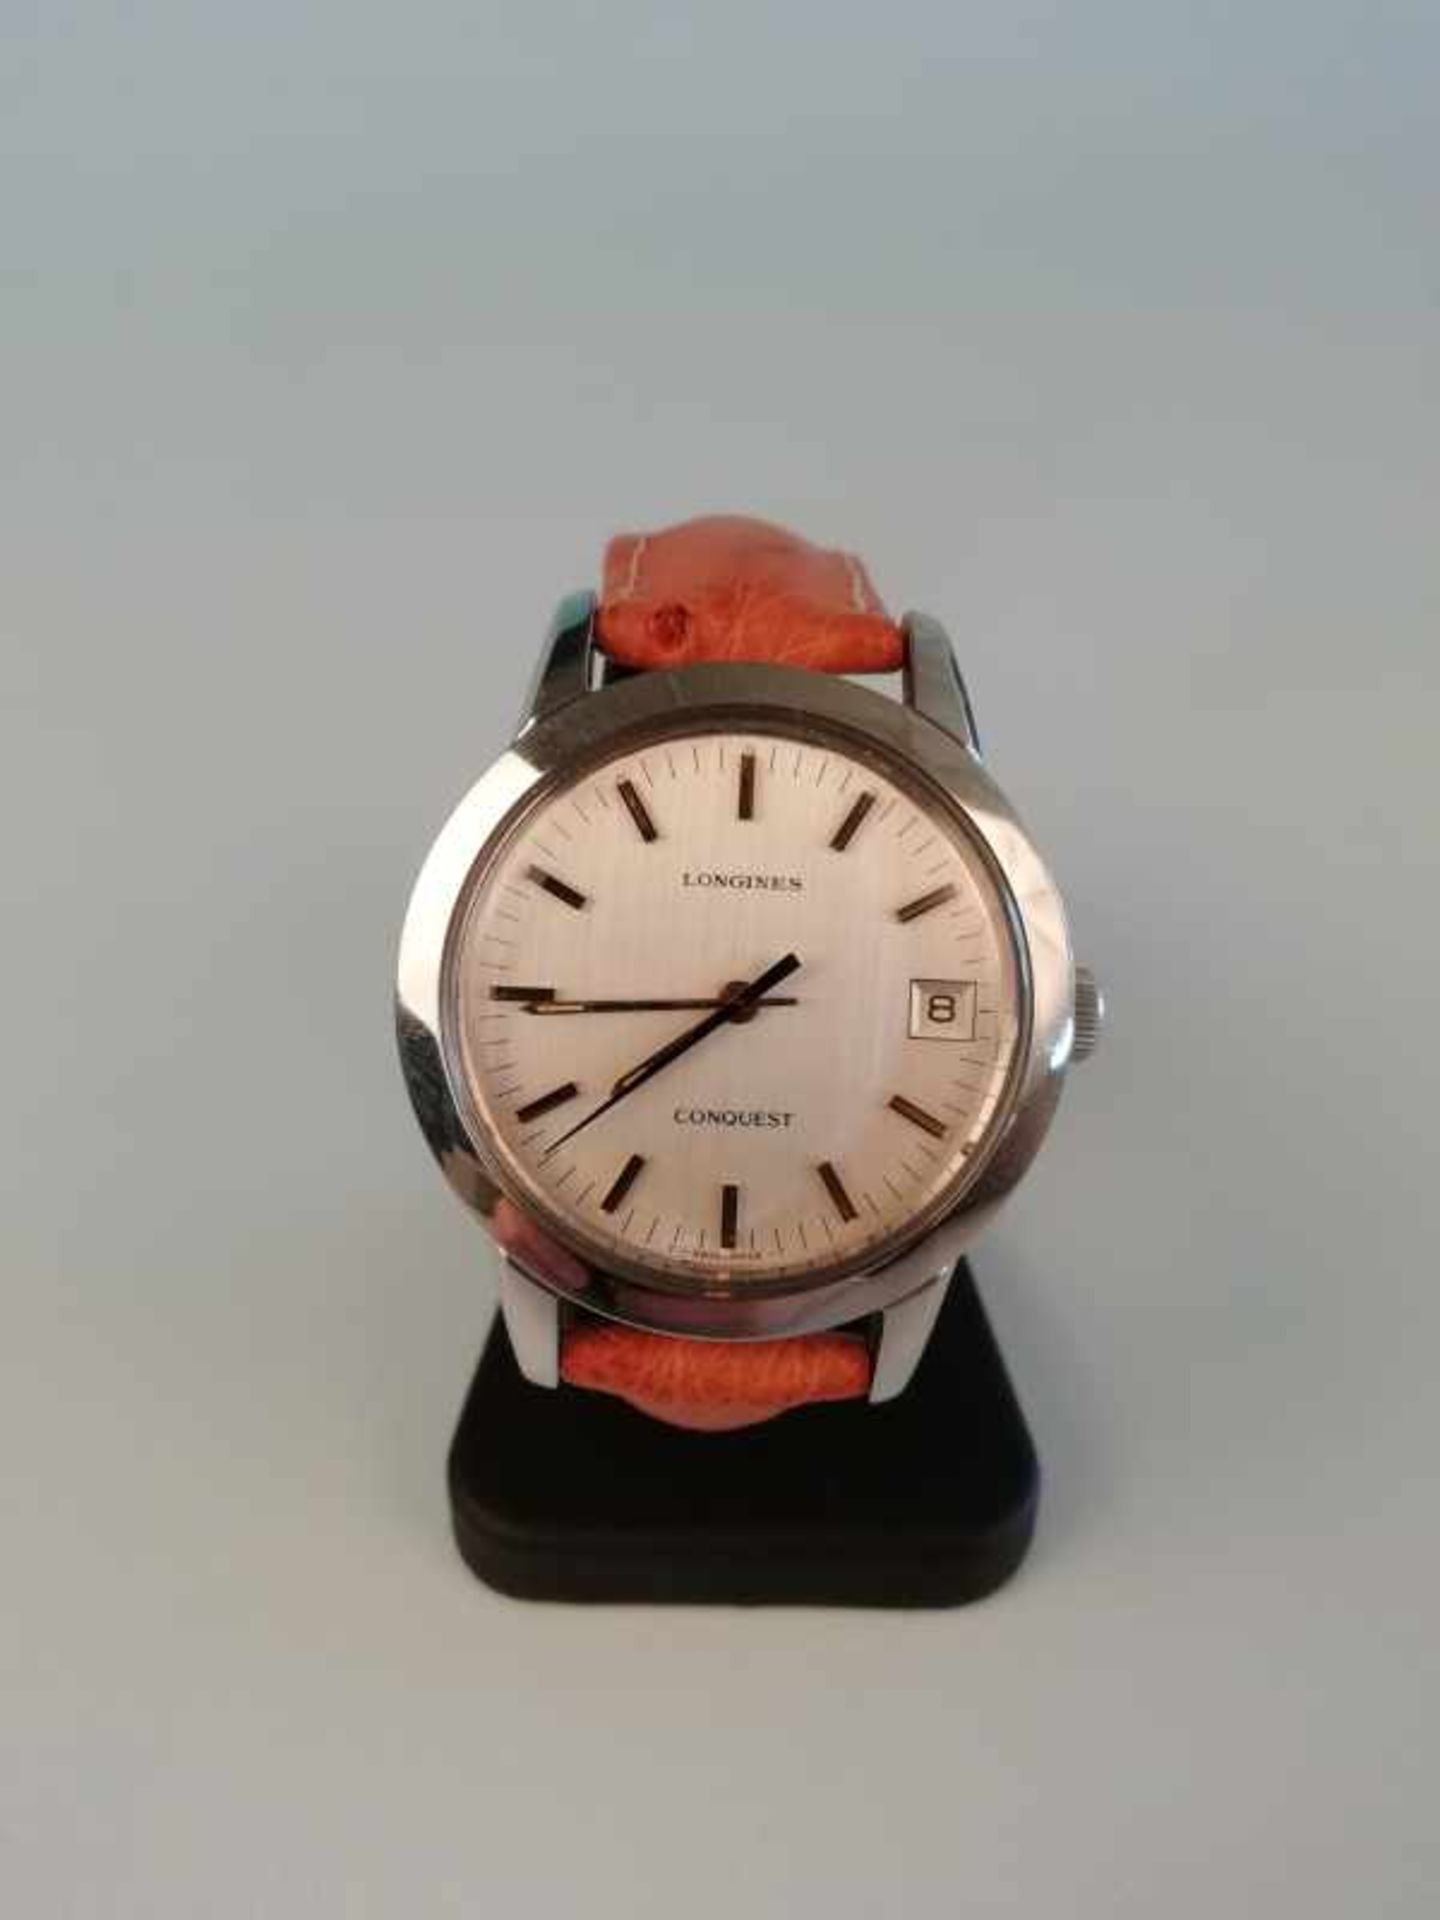 Armbanduhr "Longines"Metall, Vintage, Ankerwerk, Datum, 65,2g, Werkservice wird empfohlen, keine